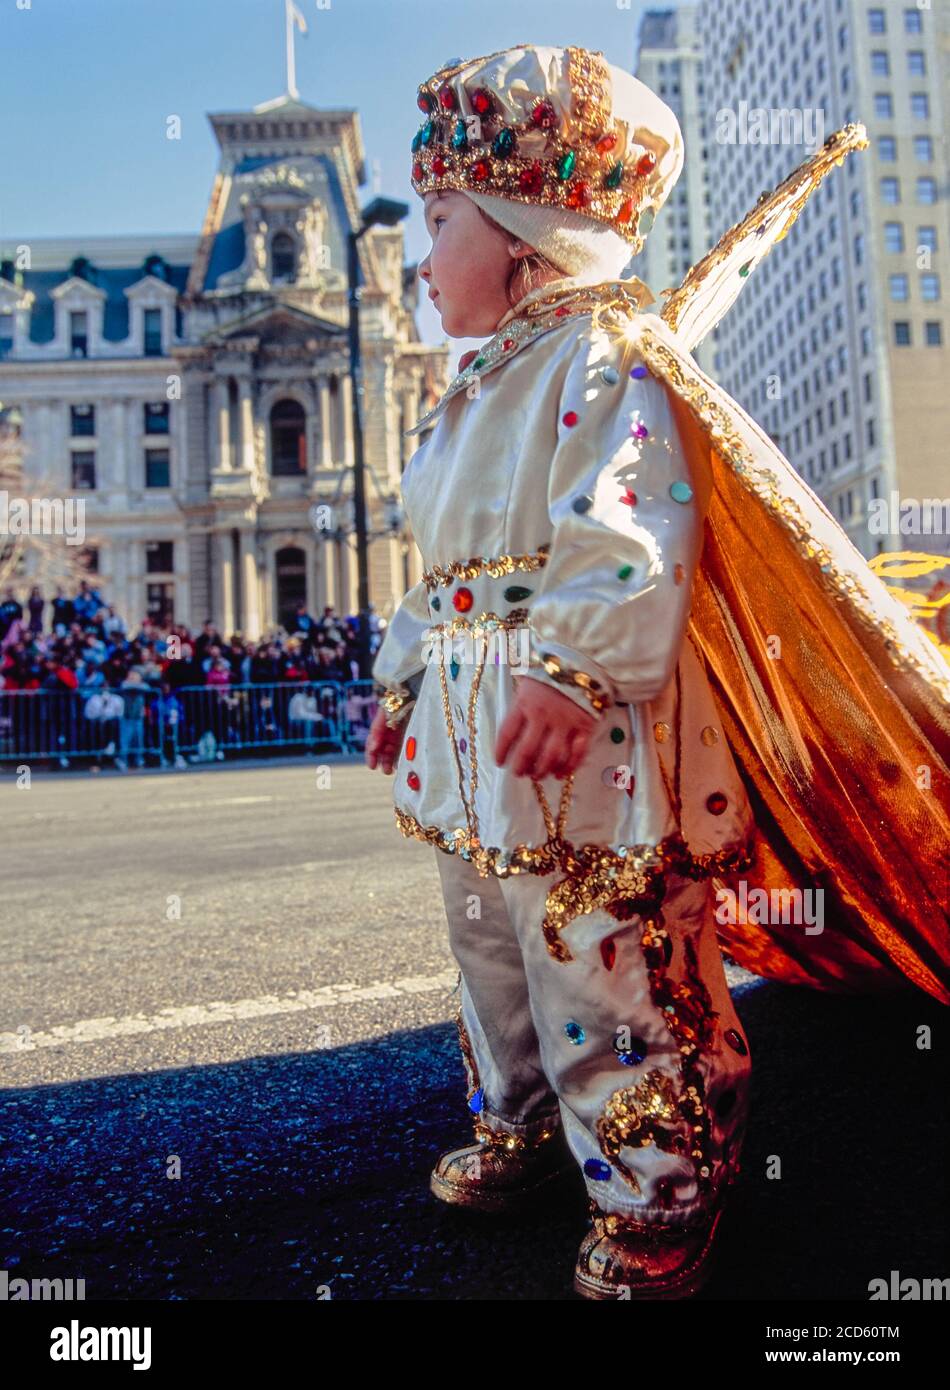 Bambino in costume colorato durante la Mummers Parade, Philadelphia, Pennsylvania, USA Foto Stock